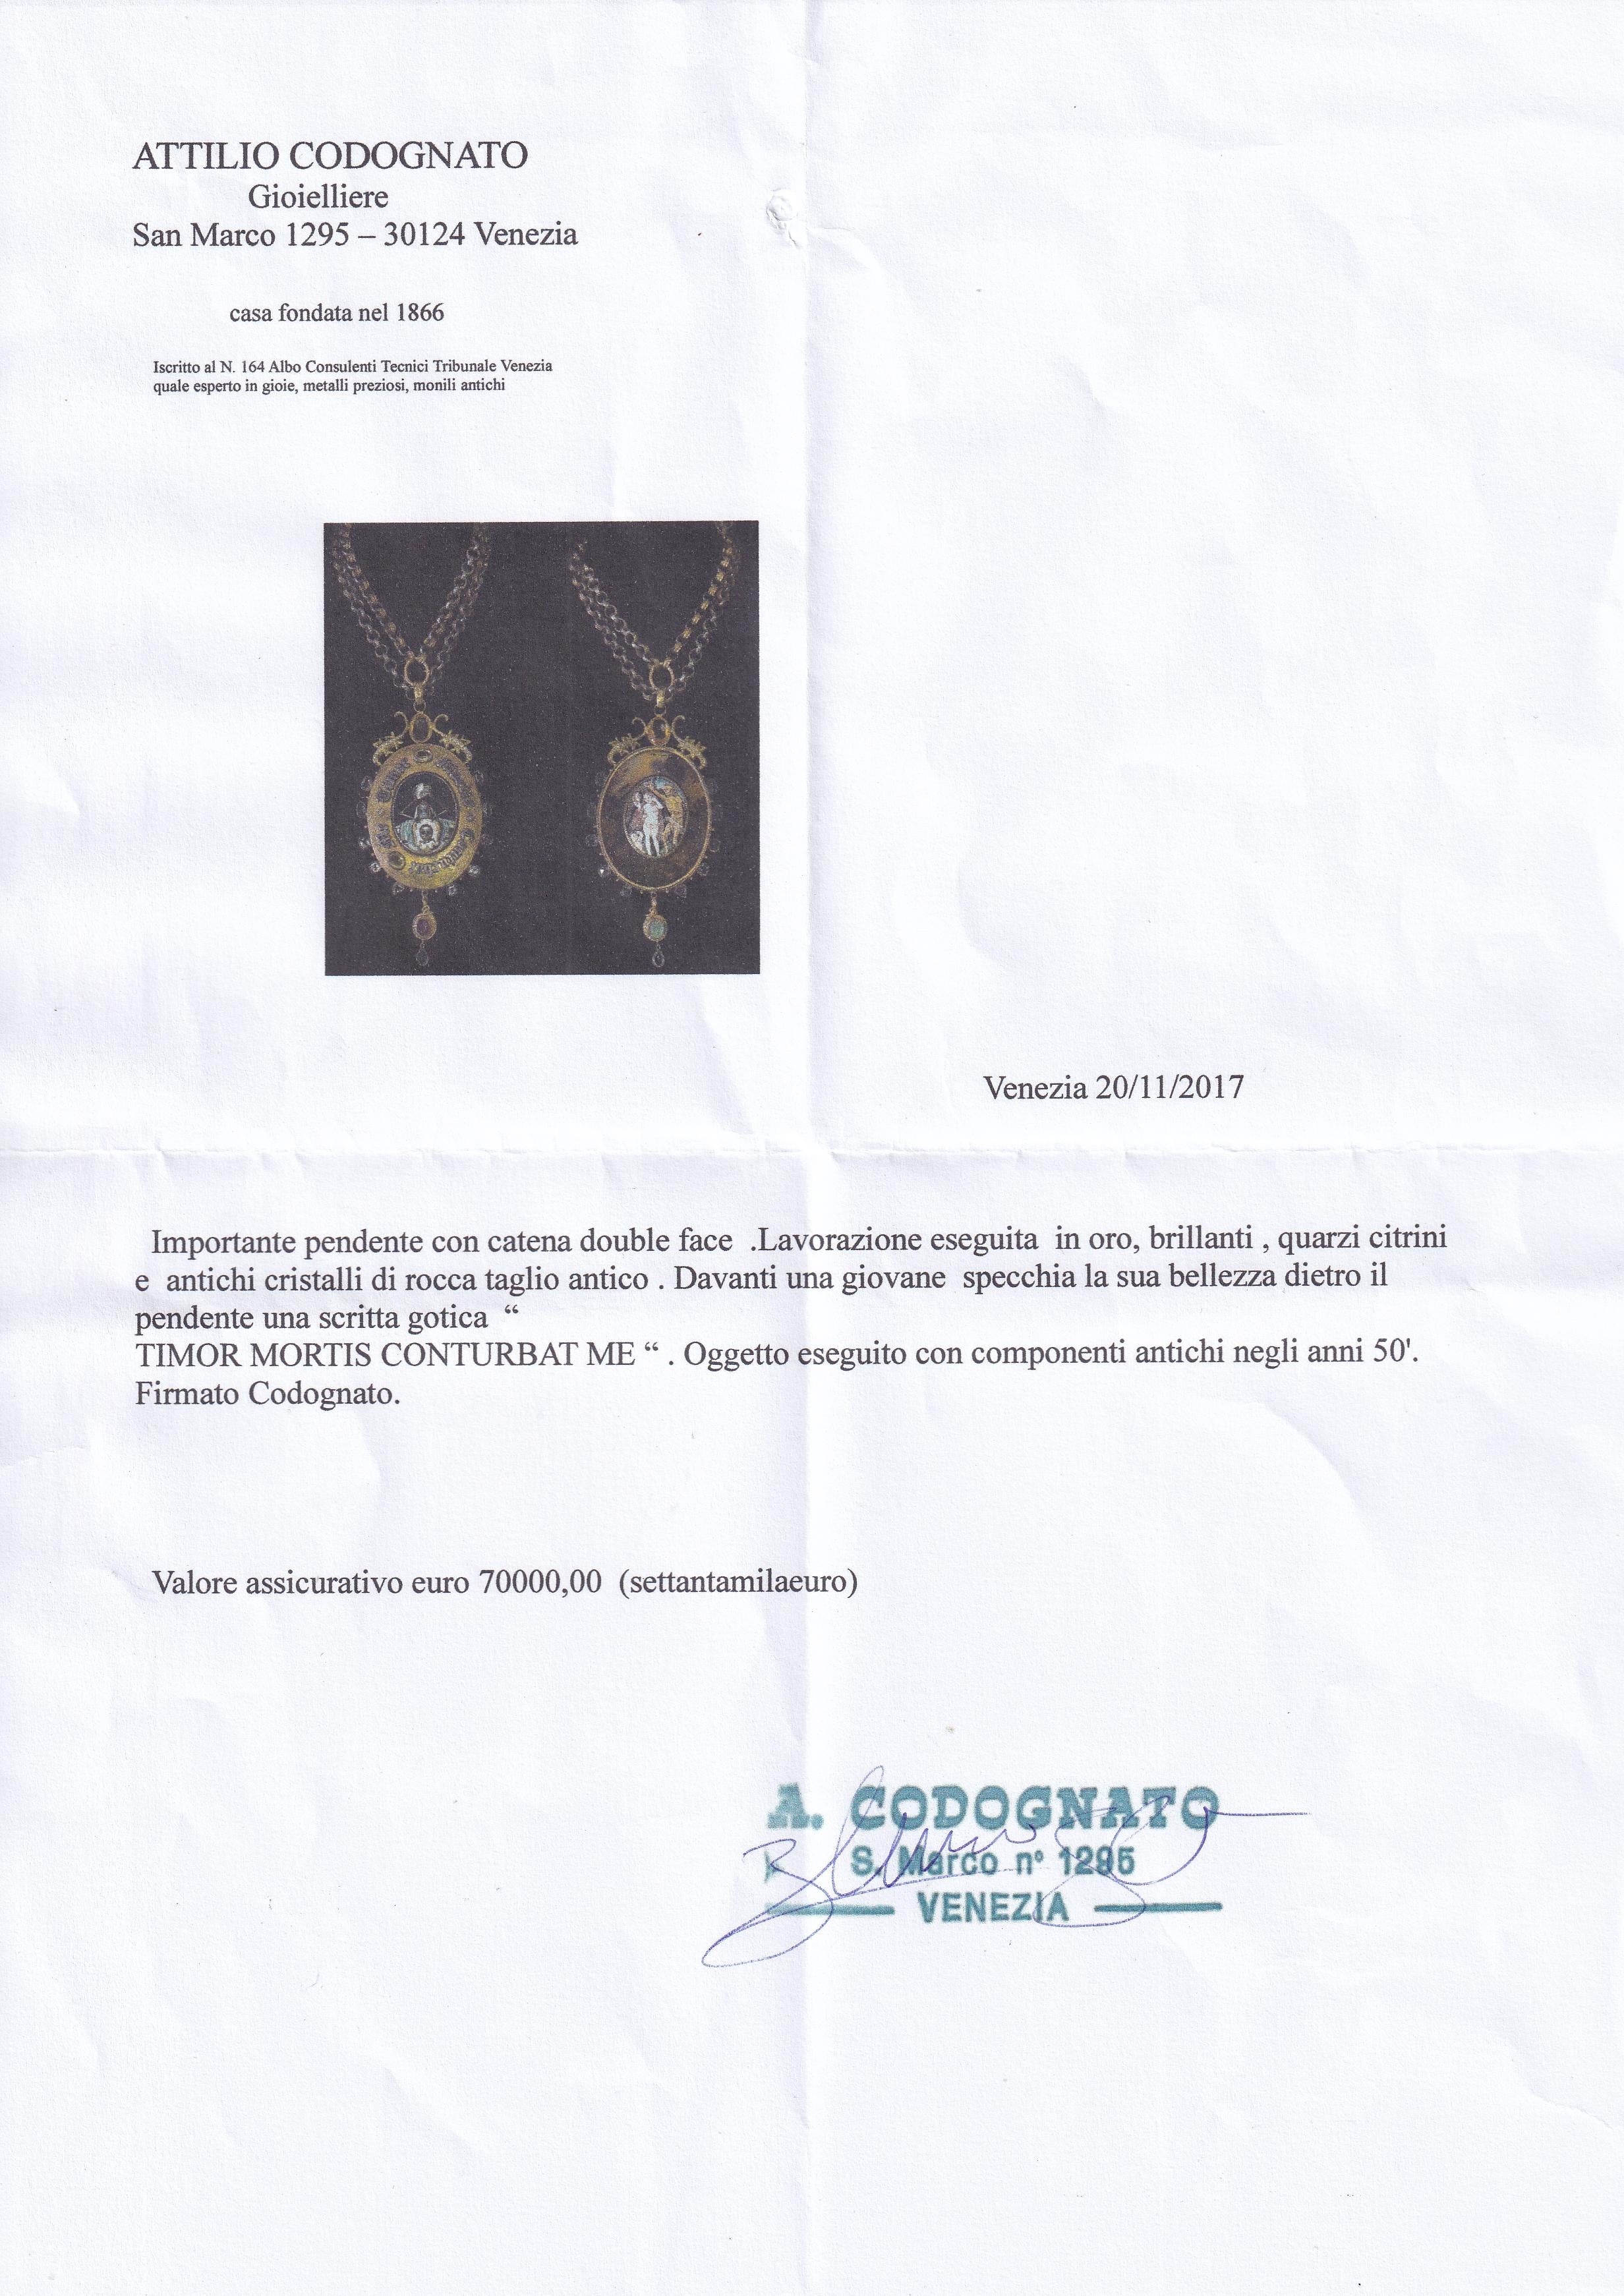 Attilio Codognato Memento Mori Double Face Medallion and Chain 3